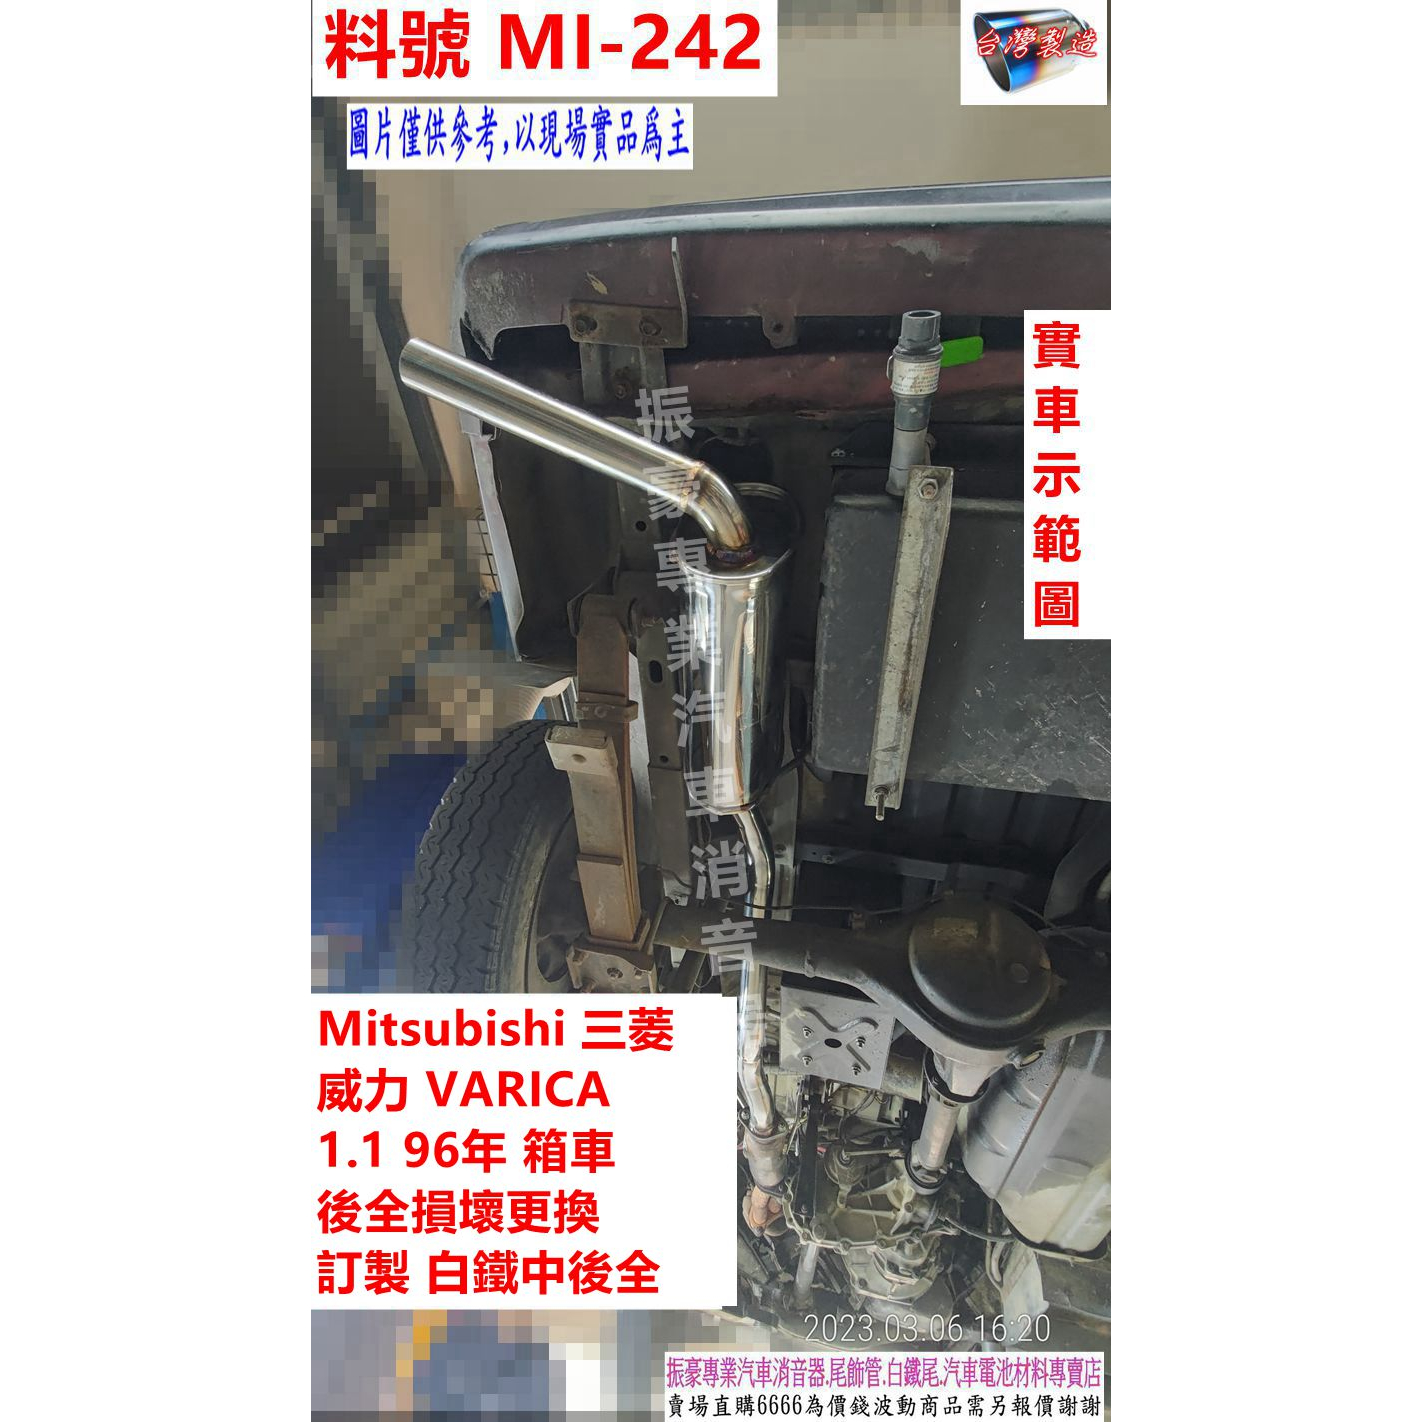 Mitsubishi 三菱 中華威力 VARICA 1.1 96年貨車 後全損壞更換 訂製白鐵中後全 料號 MI-242